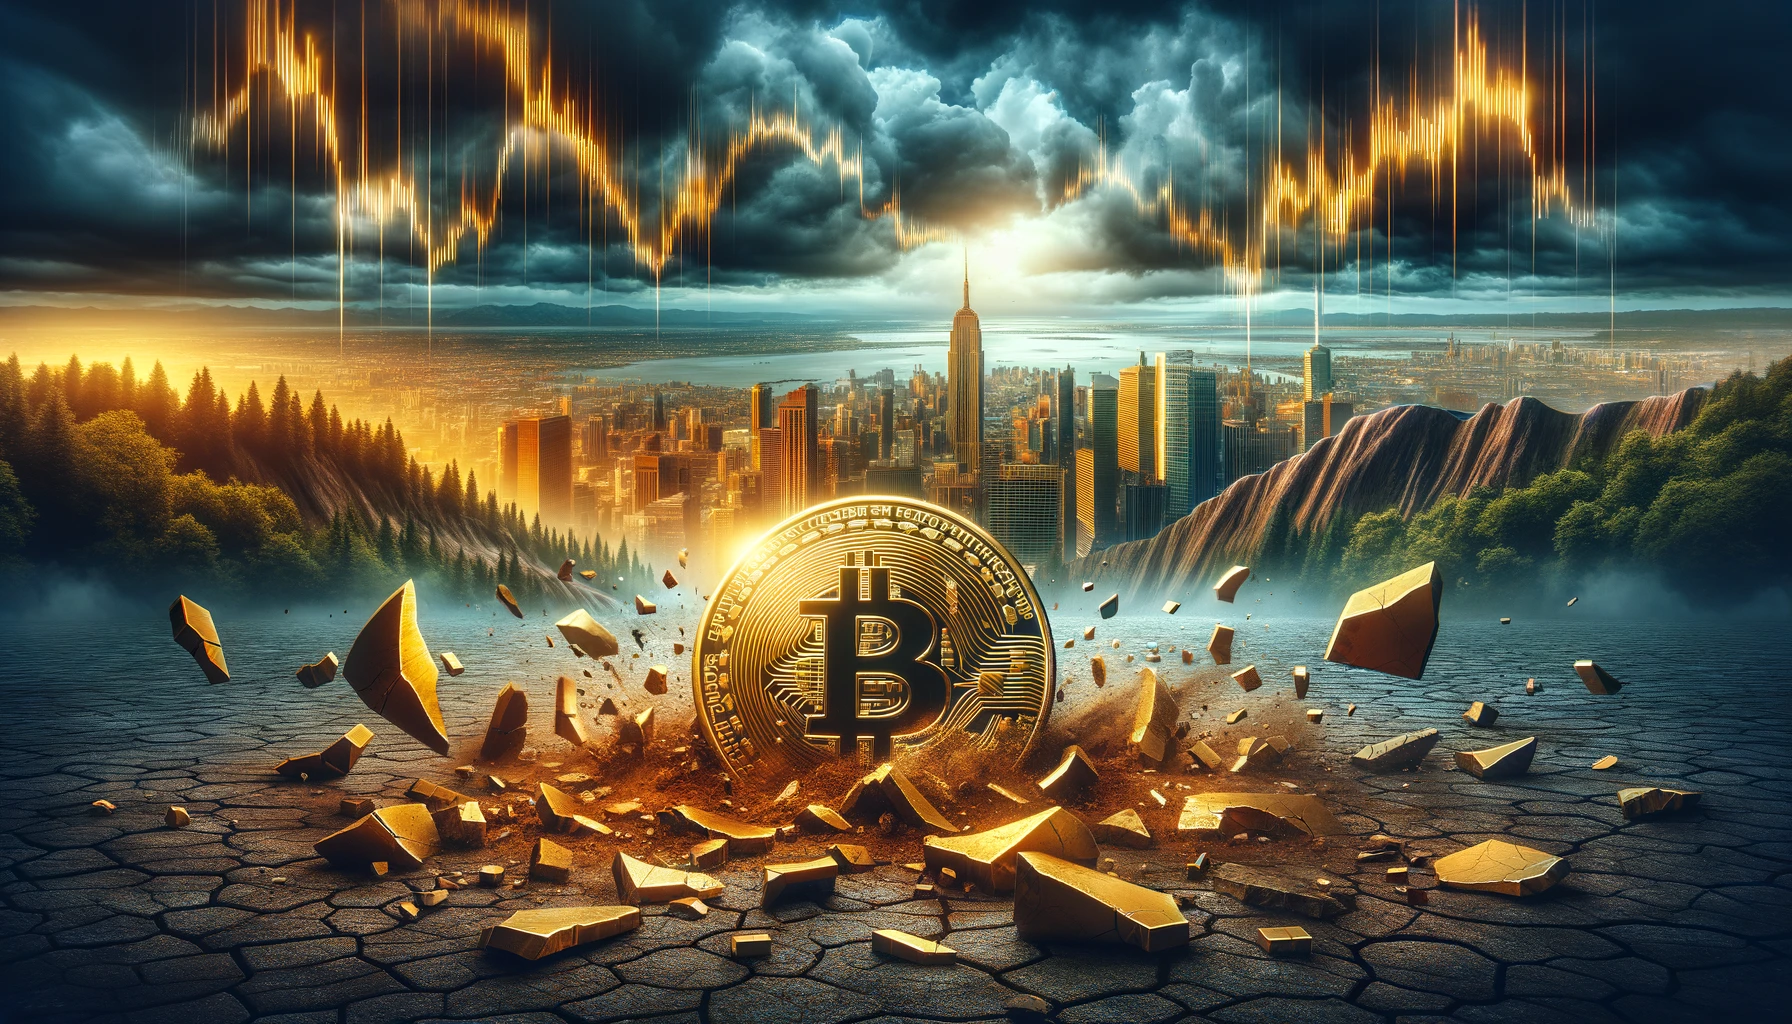 Neuer Bitcoin Crash am Horizont? Erste Mt. Gox Auszahlungen gestartet